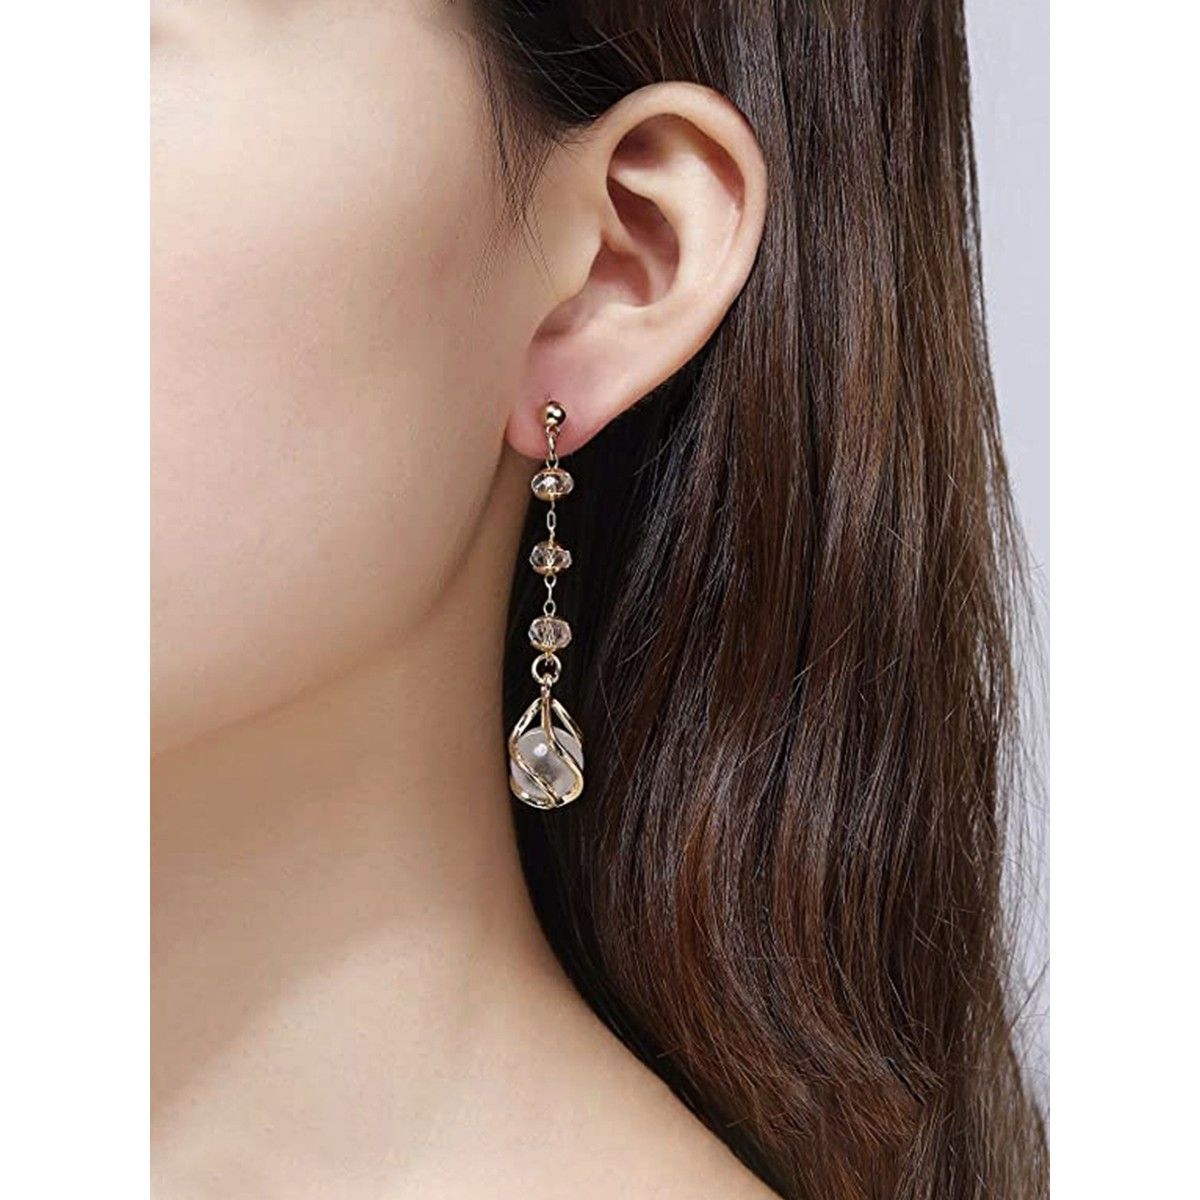 Buy Xerling Big Pearl Long Tassel Drop Dangle Earrings Pearl Dangle Earrings  Chain for Women Teen Girls Rhinestones Tassel Earrings at Amazonin